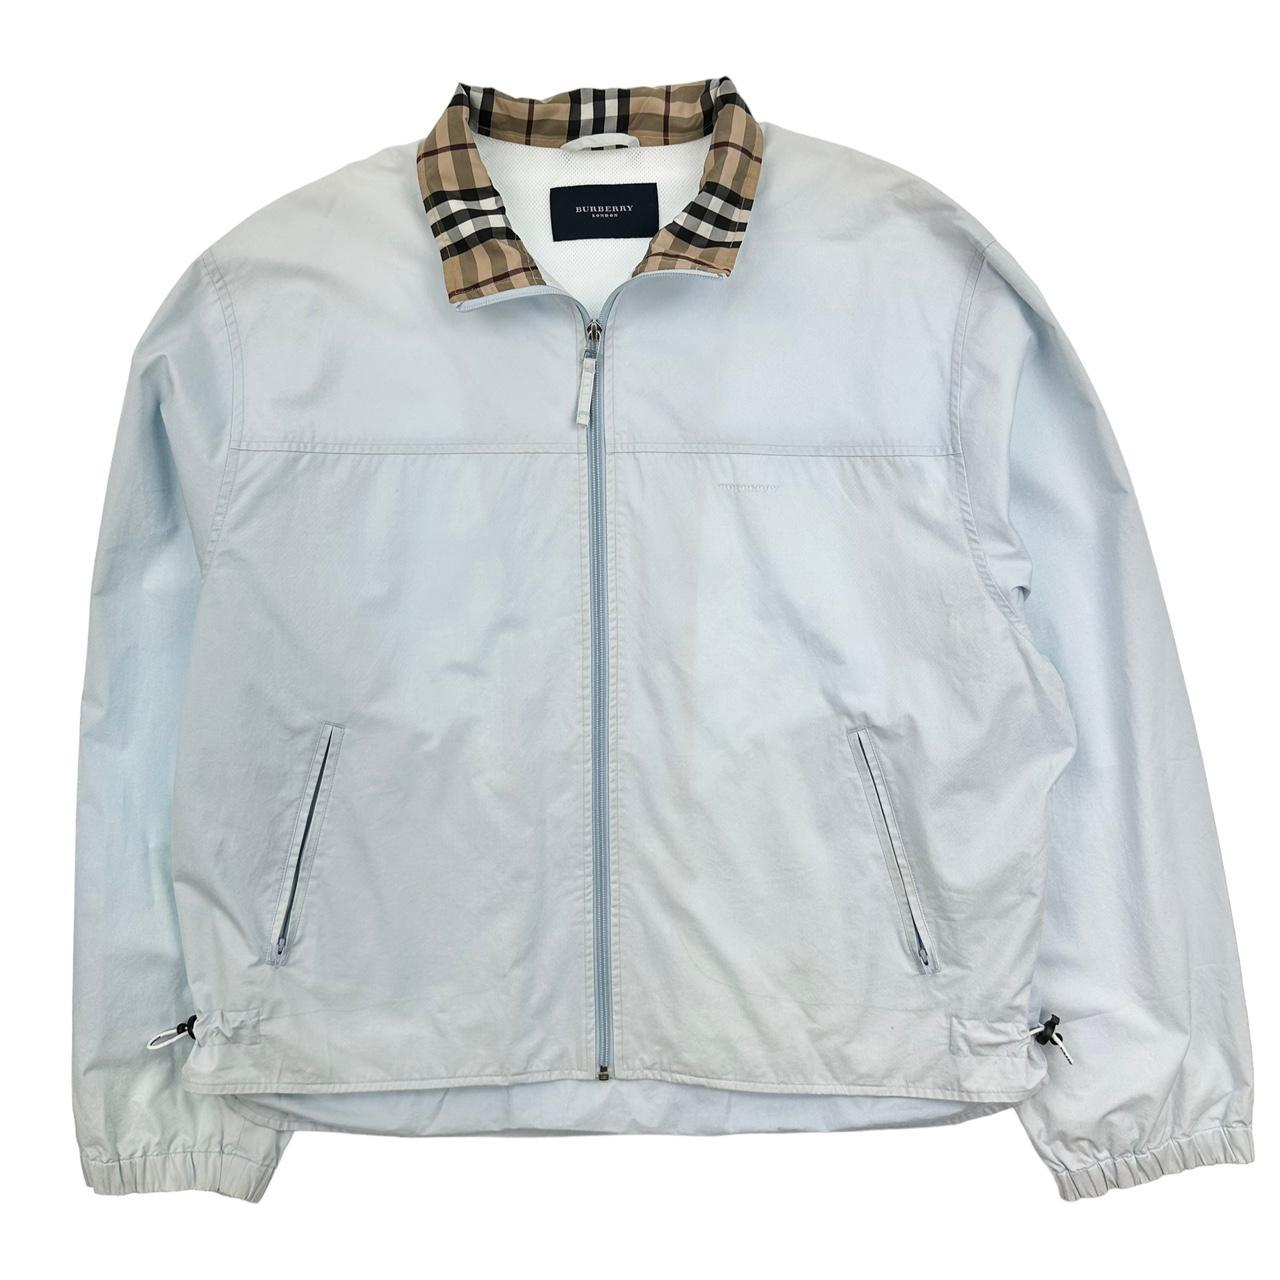 Vintage Burberry Nova Check Collar Jacket size XL